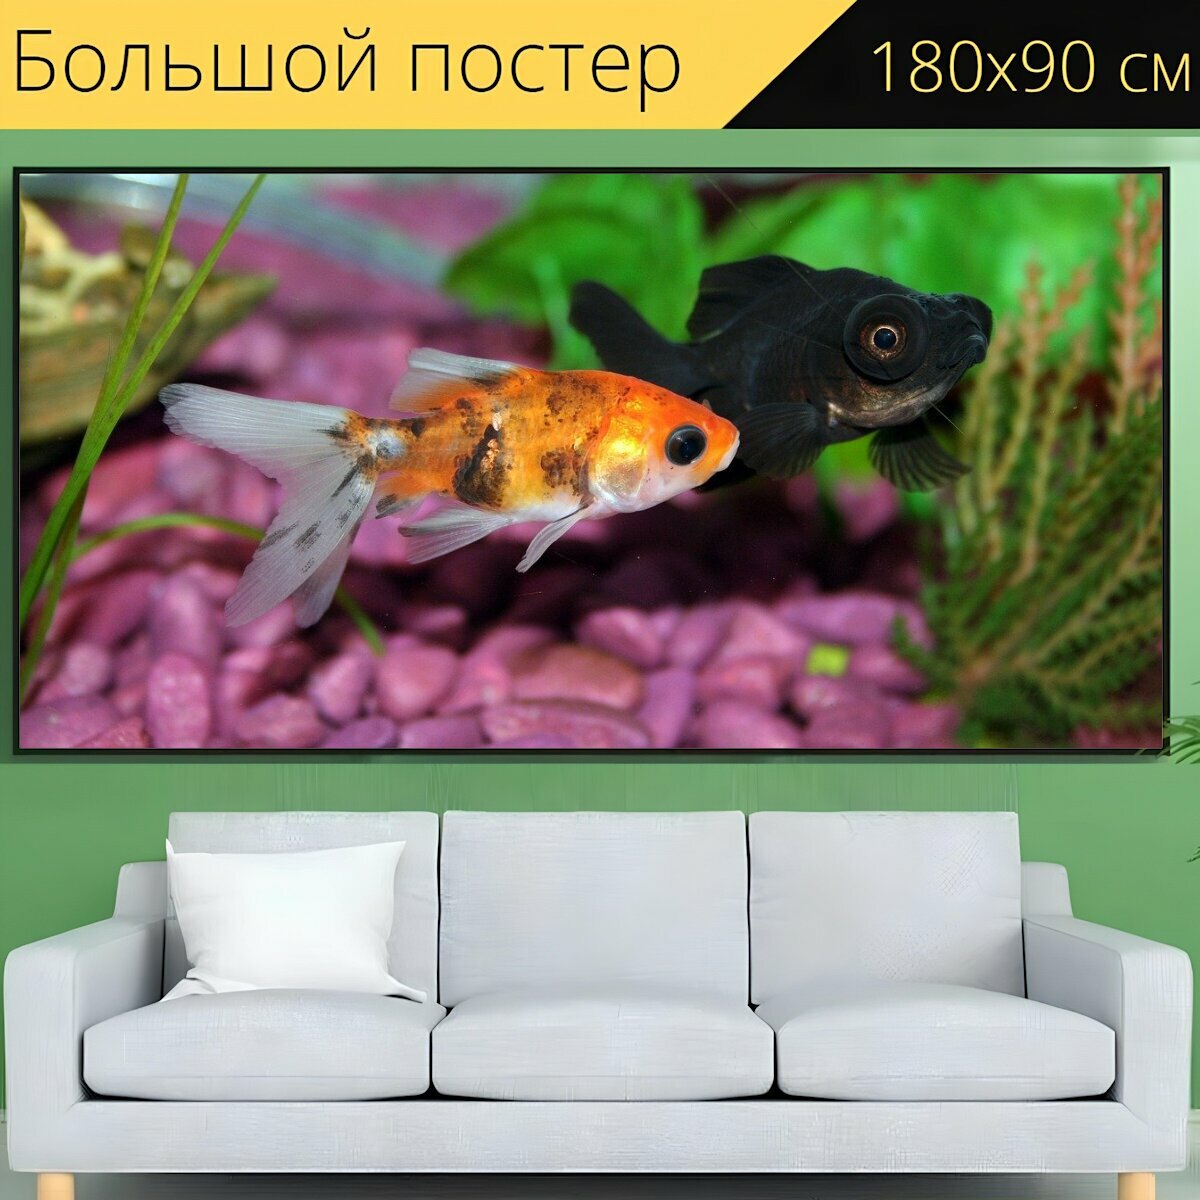 Большой постер "Золотая рыбка, рыбы, аквариум" 180 x 90 см. для интерьера